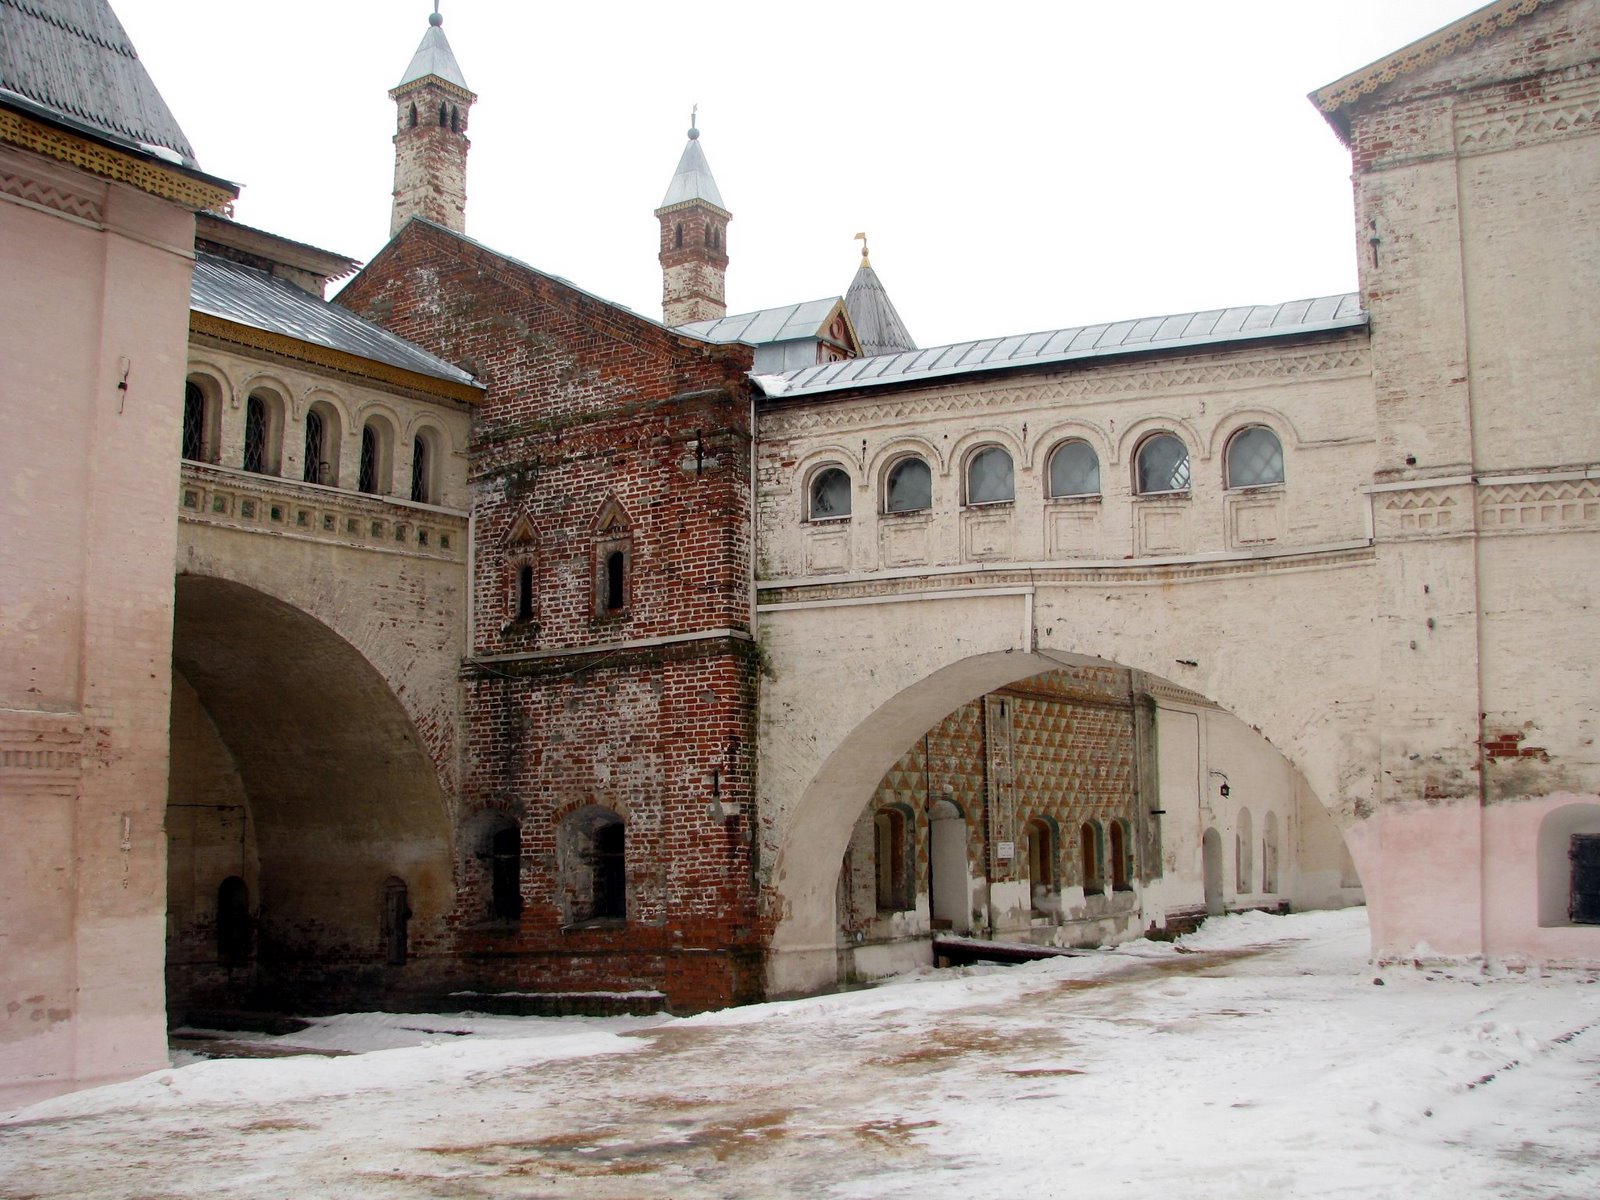 Monastère de la ville de Rostov située à 3h00 de train de Moscou.